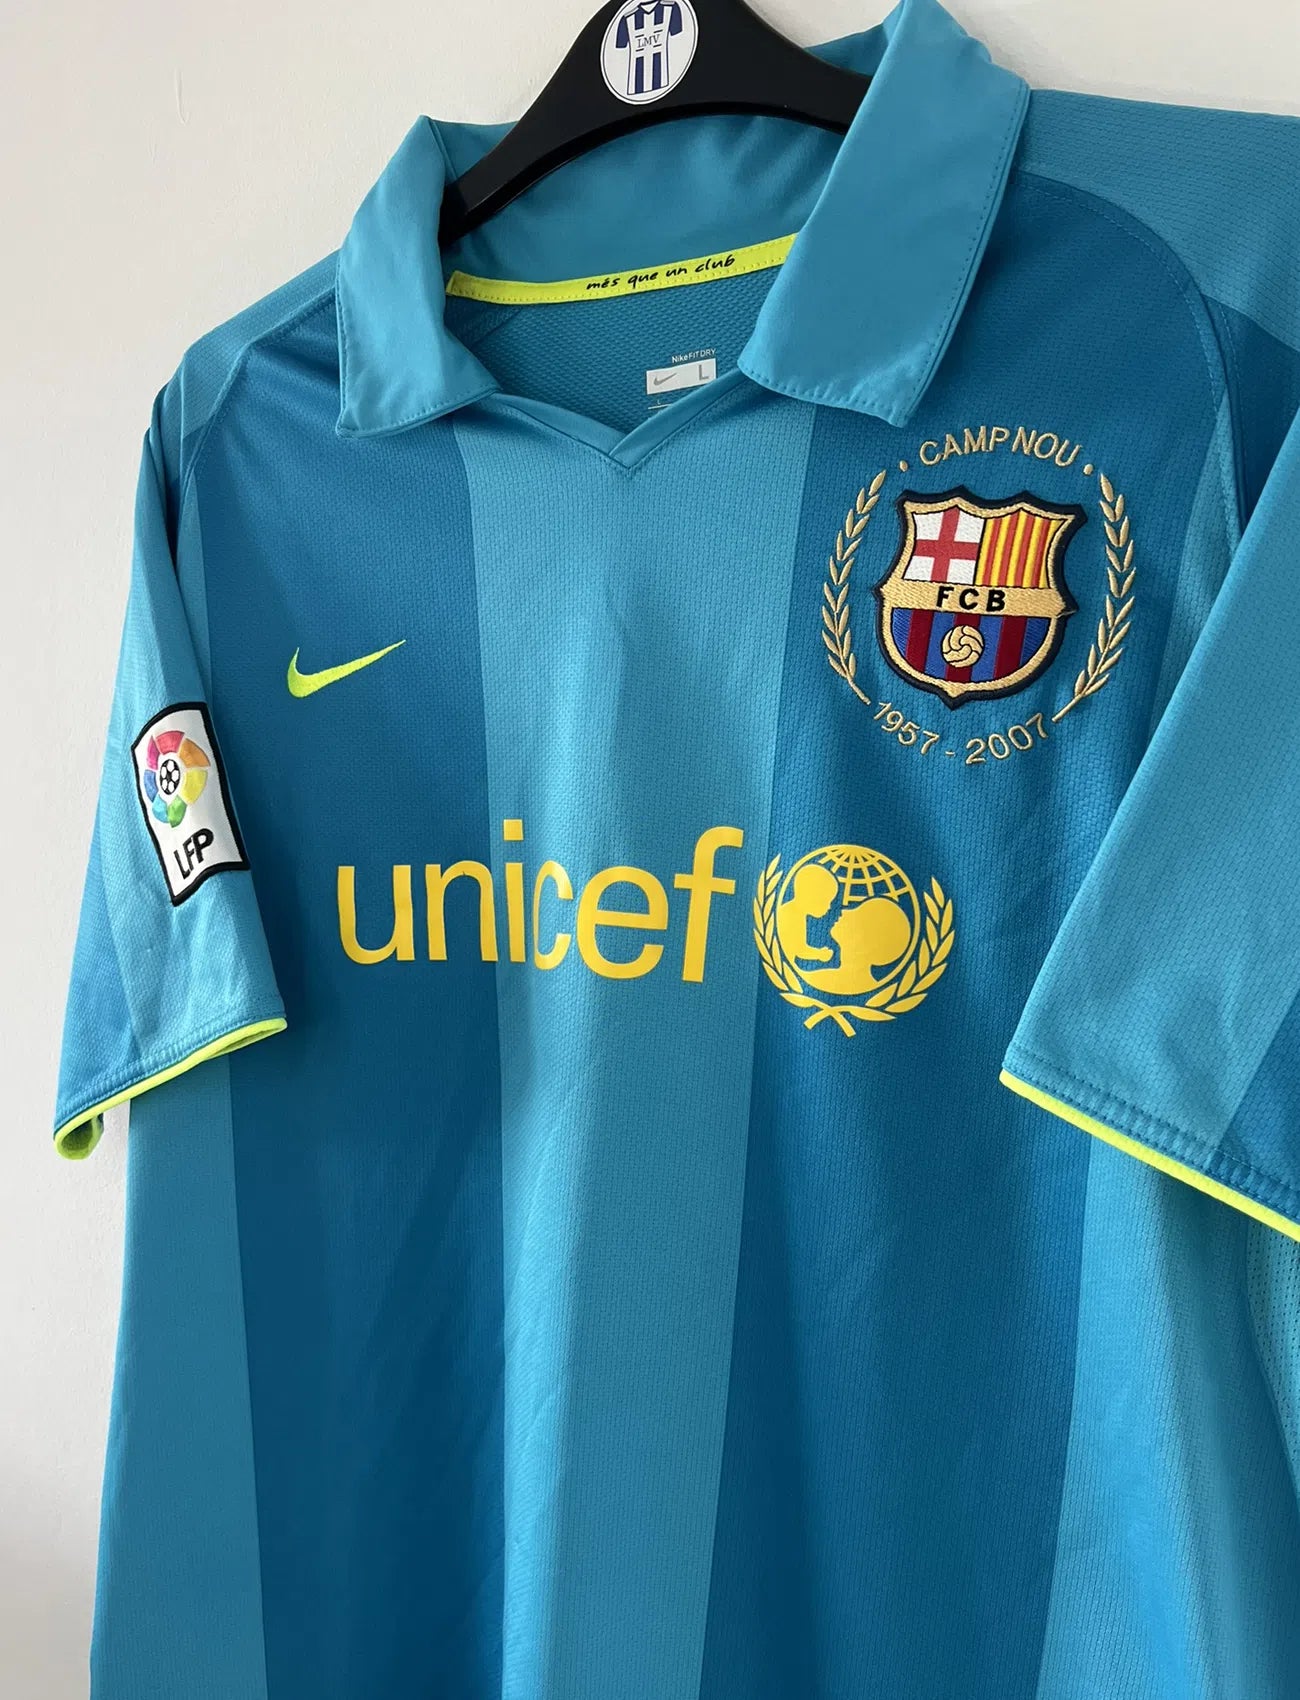 Maillot de foot vintage extérieur du FC Barcelone de la saison 2007-2009. On peut retrouver l'équipementier nike et le sponsor unicef. Le maillot est de couleur bleu turquoise. Il s'agit d'un maillot authentique comportant les numéros 237743-414